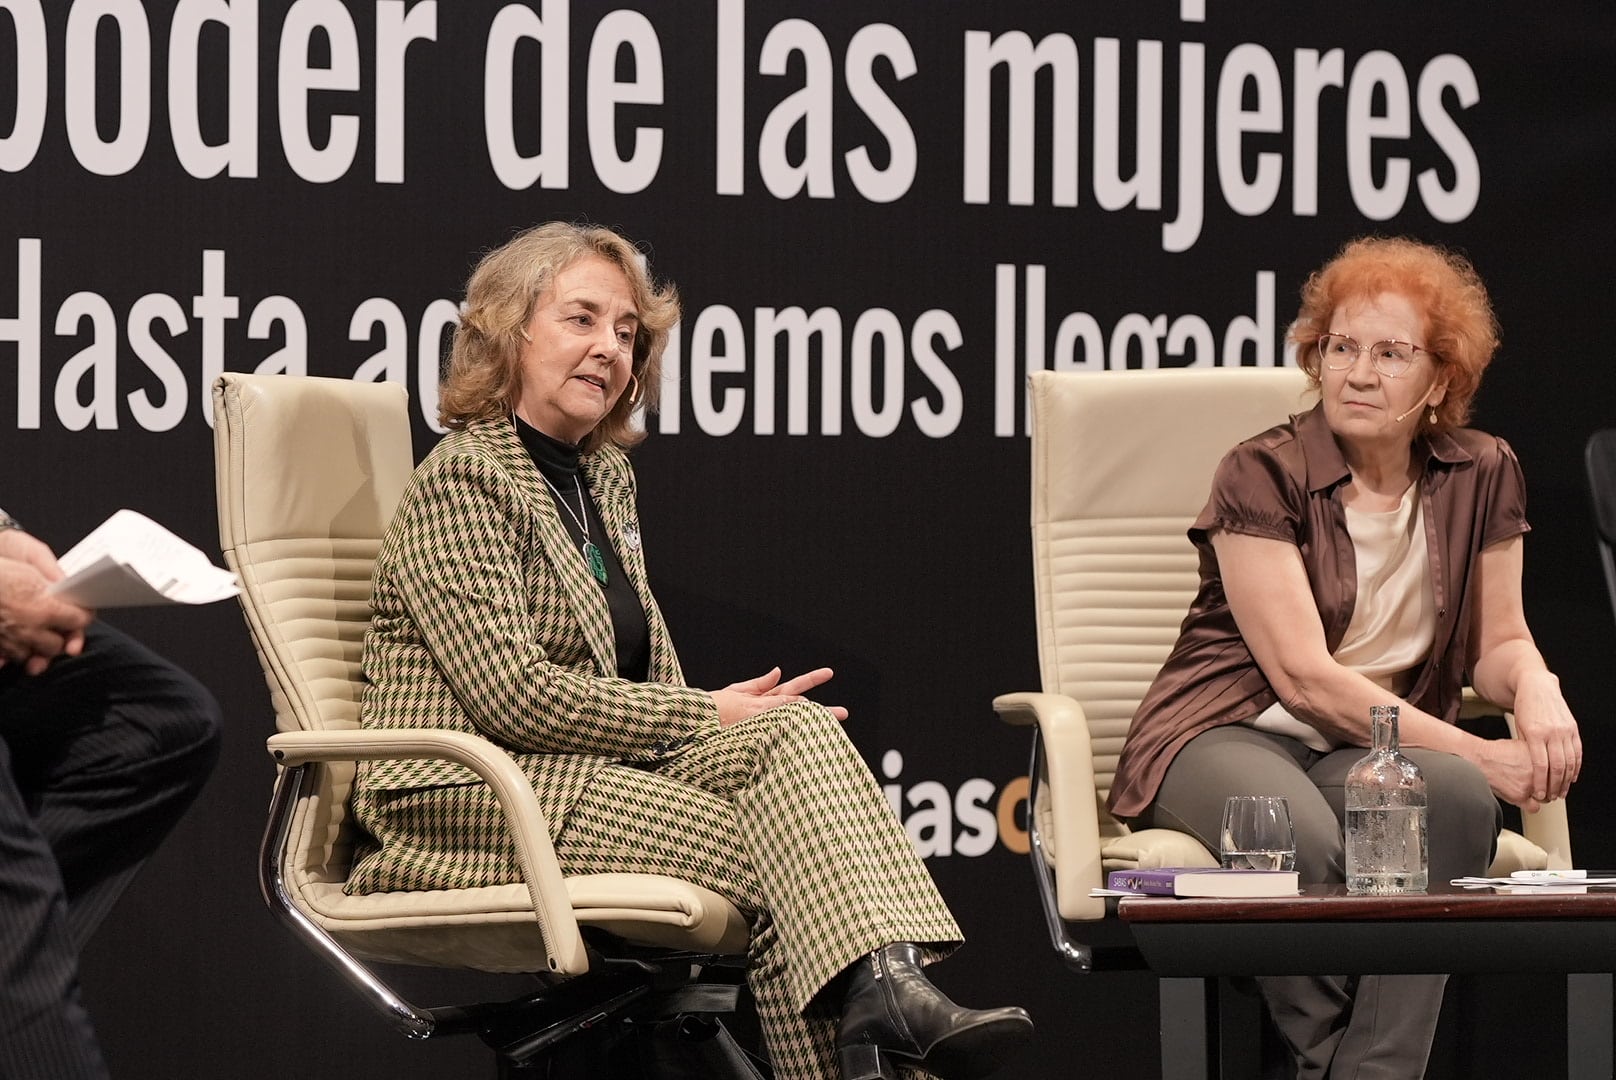 Letras en Sevilla IX: "El poder de las mujeres"